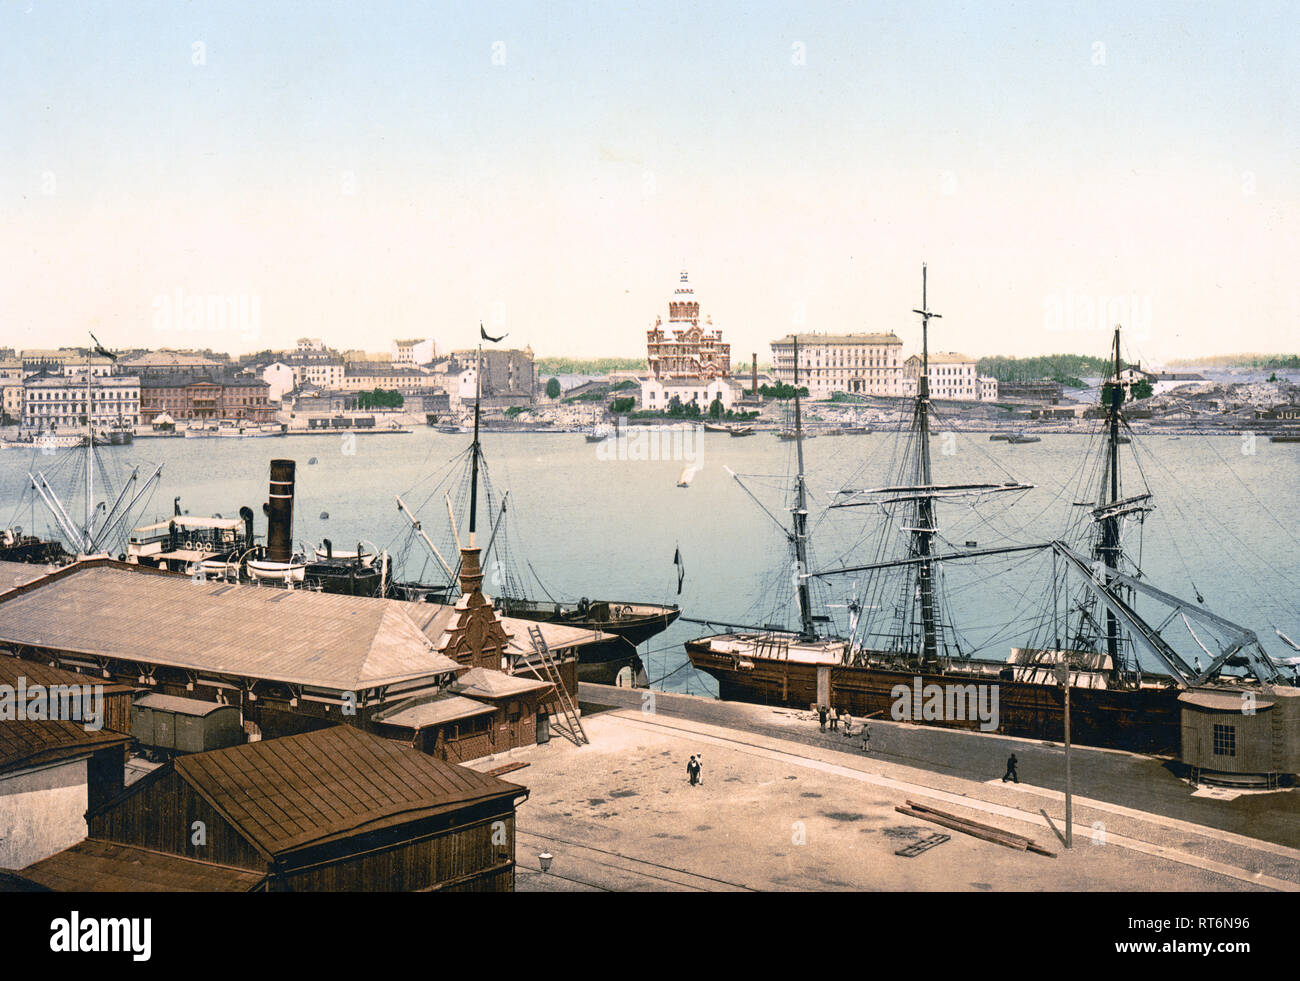 La cattedrale russa e il porto, Helsingfors, Russia, cioè, Helsinki, Finlandia ca. 1890-1900 Foto Stock